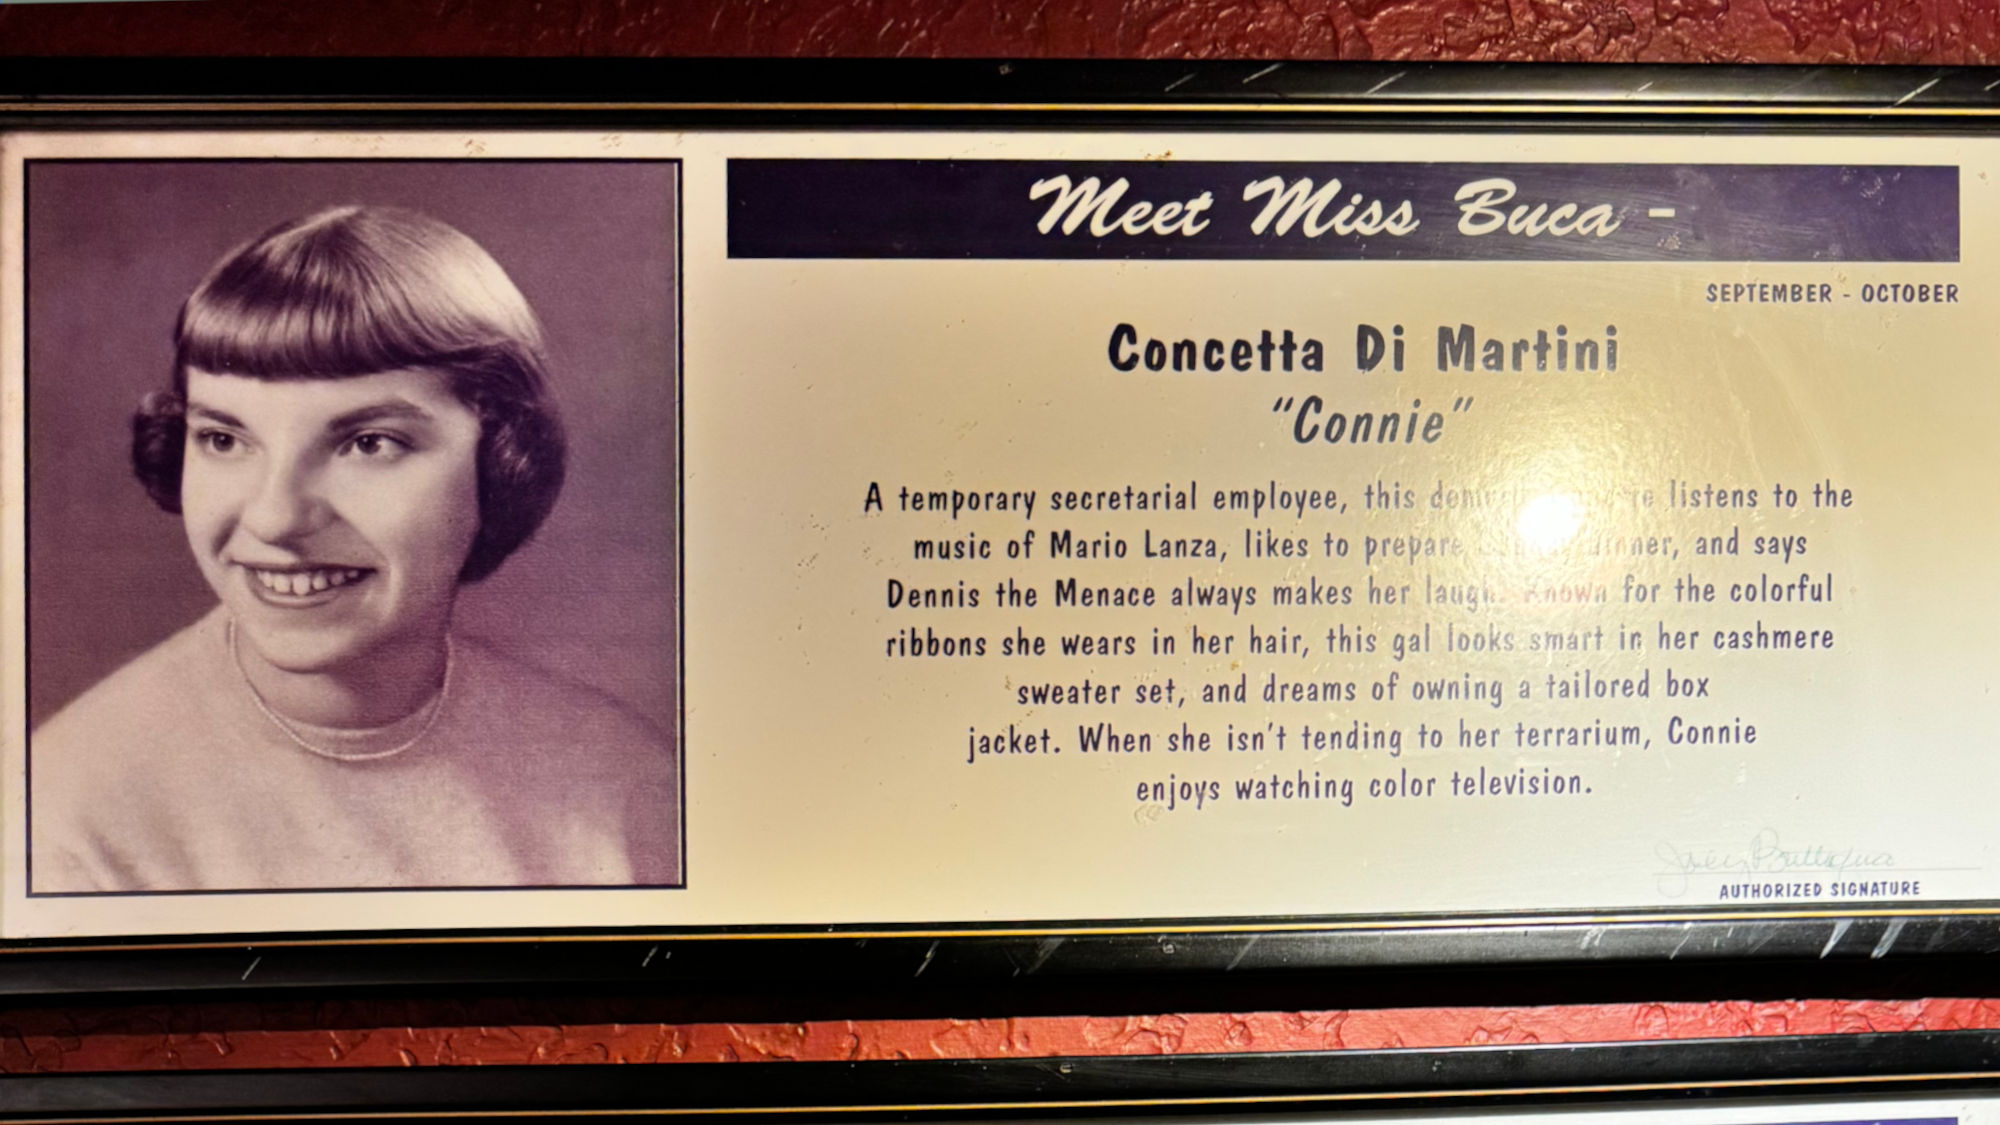 Meet Miss Buca Concetta Di Martini